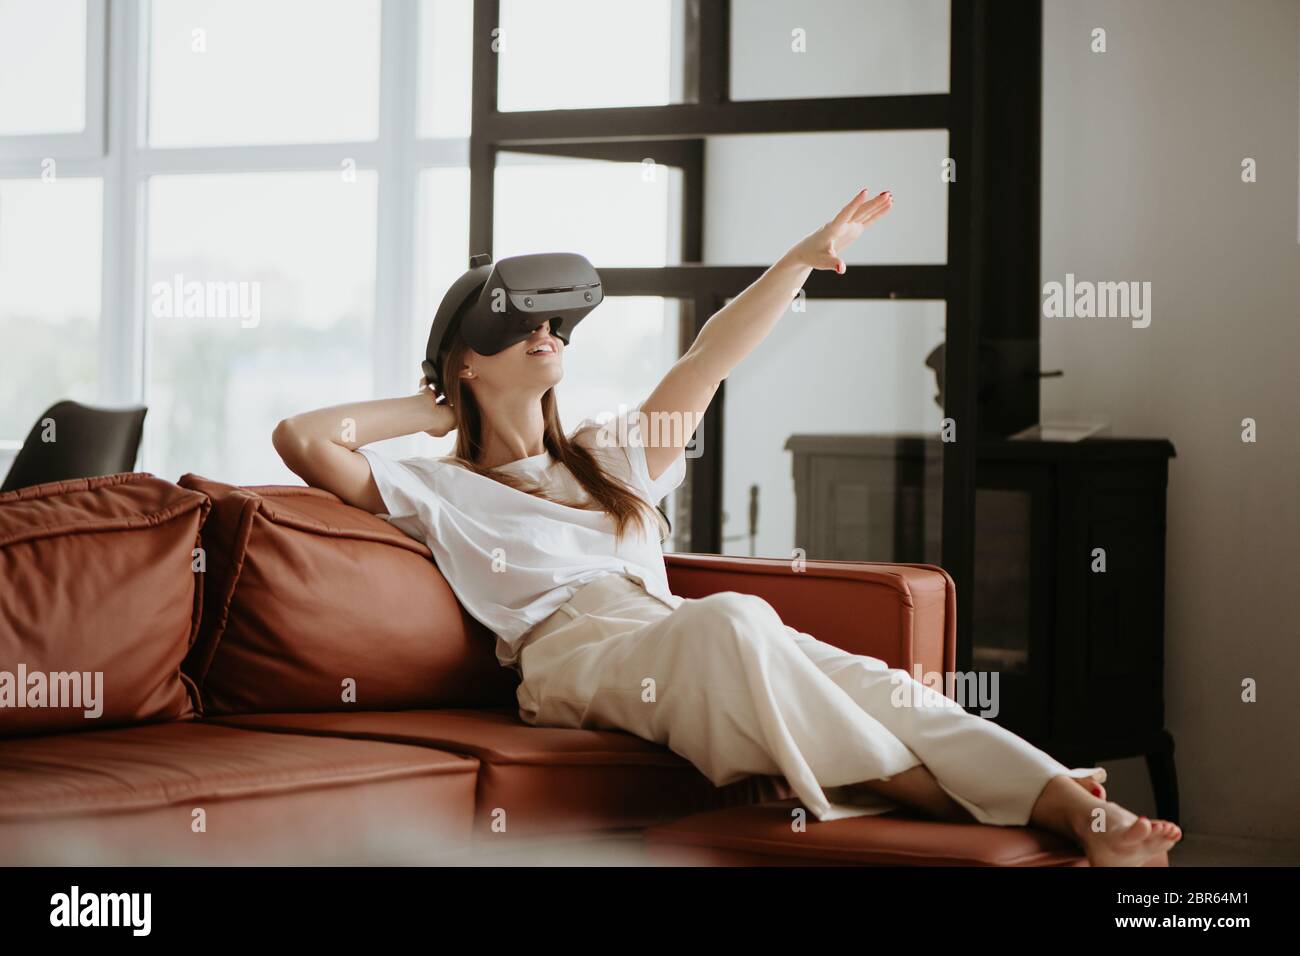 Schöne junge Frau sitzt auf dem Sofa und berühren etwas mit Virtual Reality Headset Brille. Stockfoto